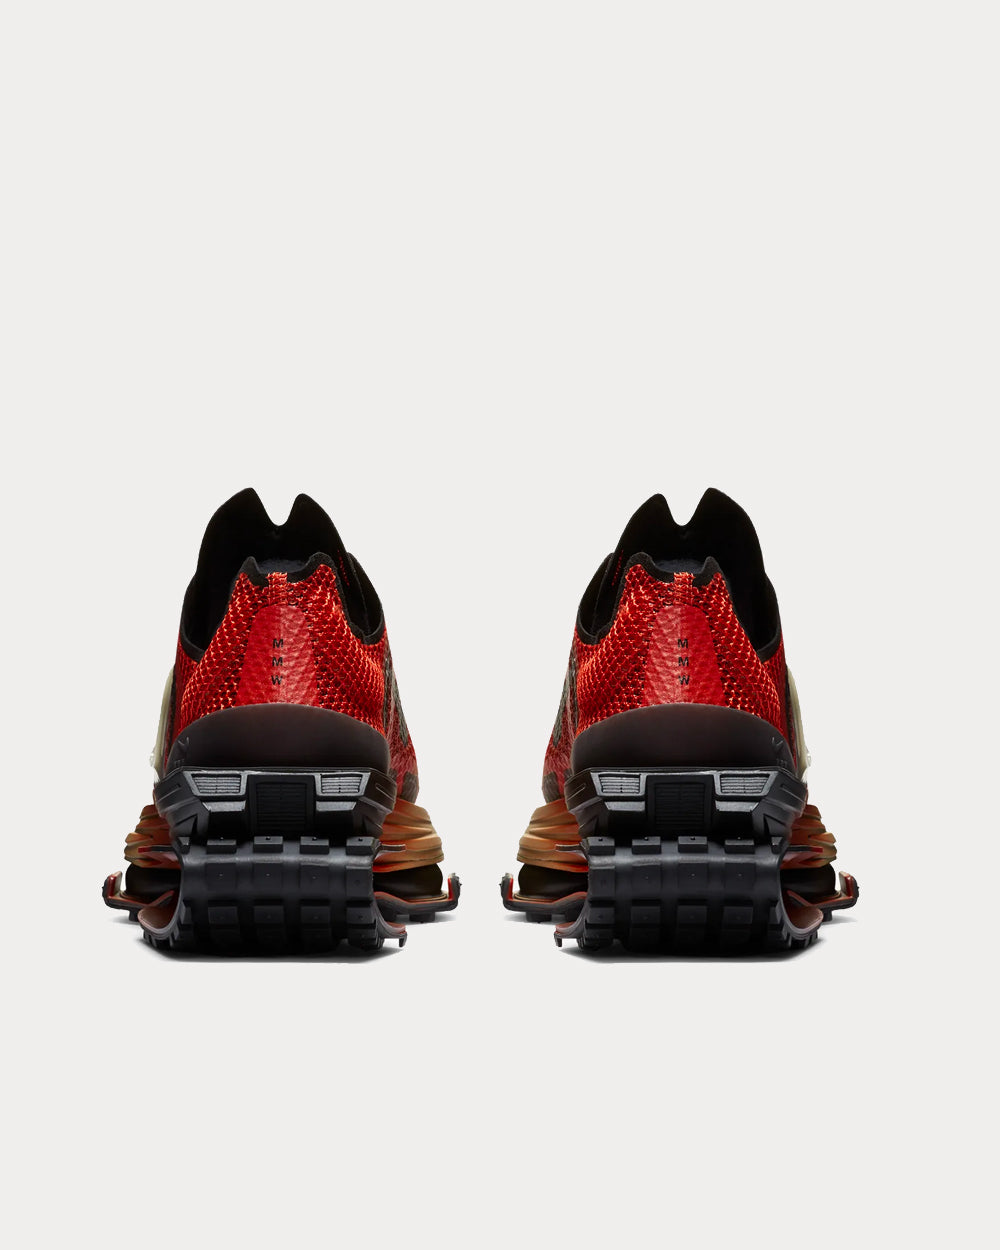 Nike x MMW - Zoom 004 Rust Factor / Black Low Top Sneakers